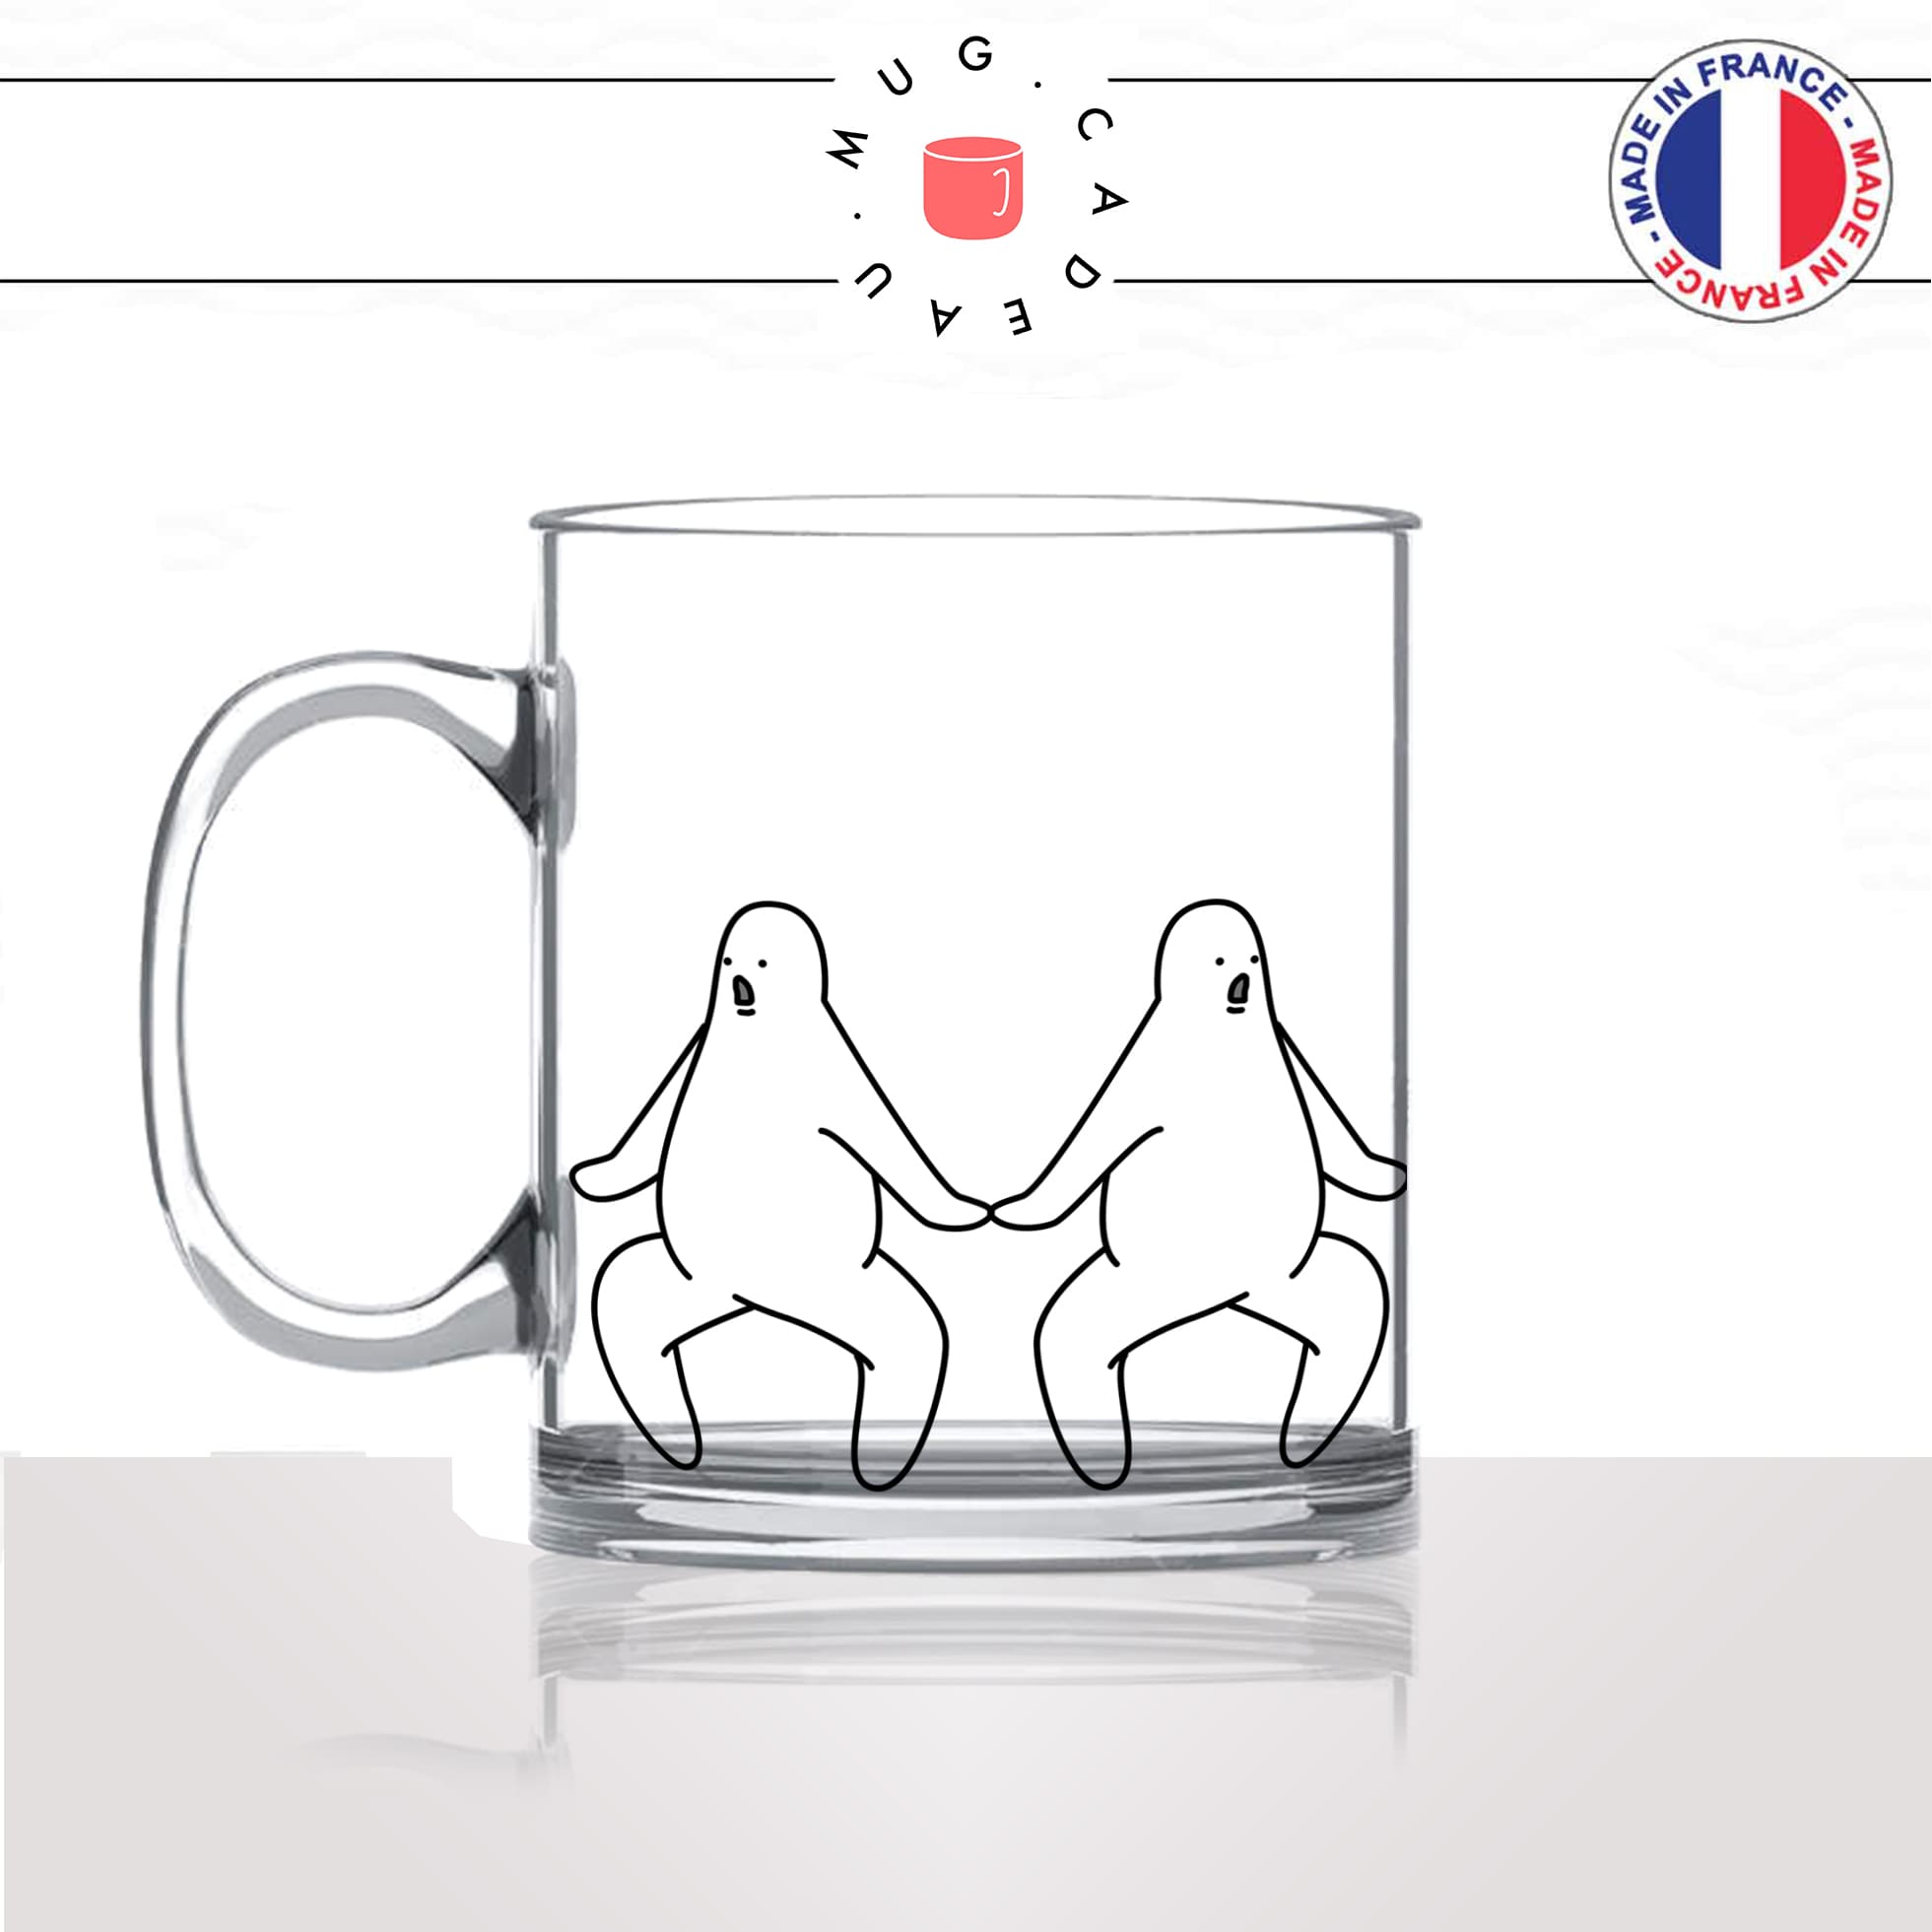 mug-tasse-en-verre-transparent-glass-oh-my-god-oh-mon-dieu-surprise-bonhommes-dessin-femme-homme-humour-idée-cadeau-fun-cool-café-thé